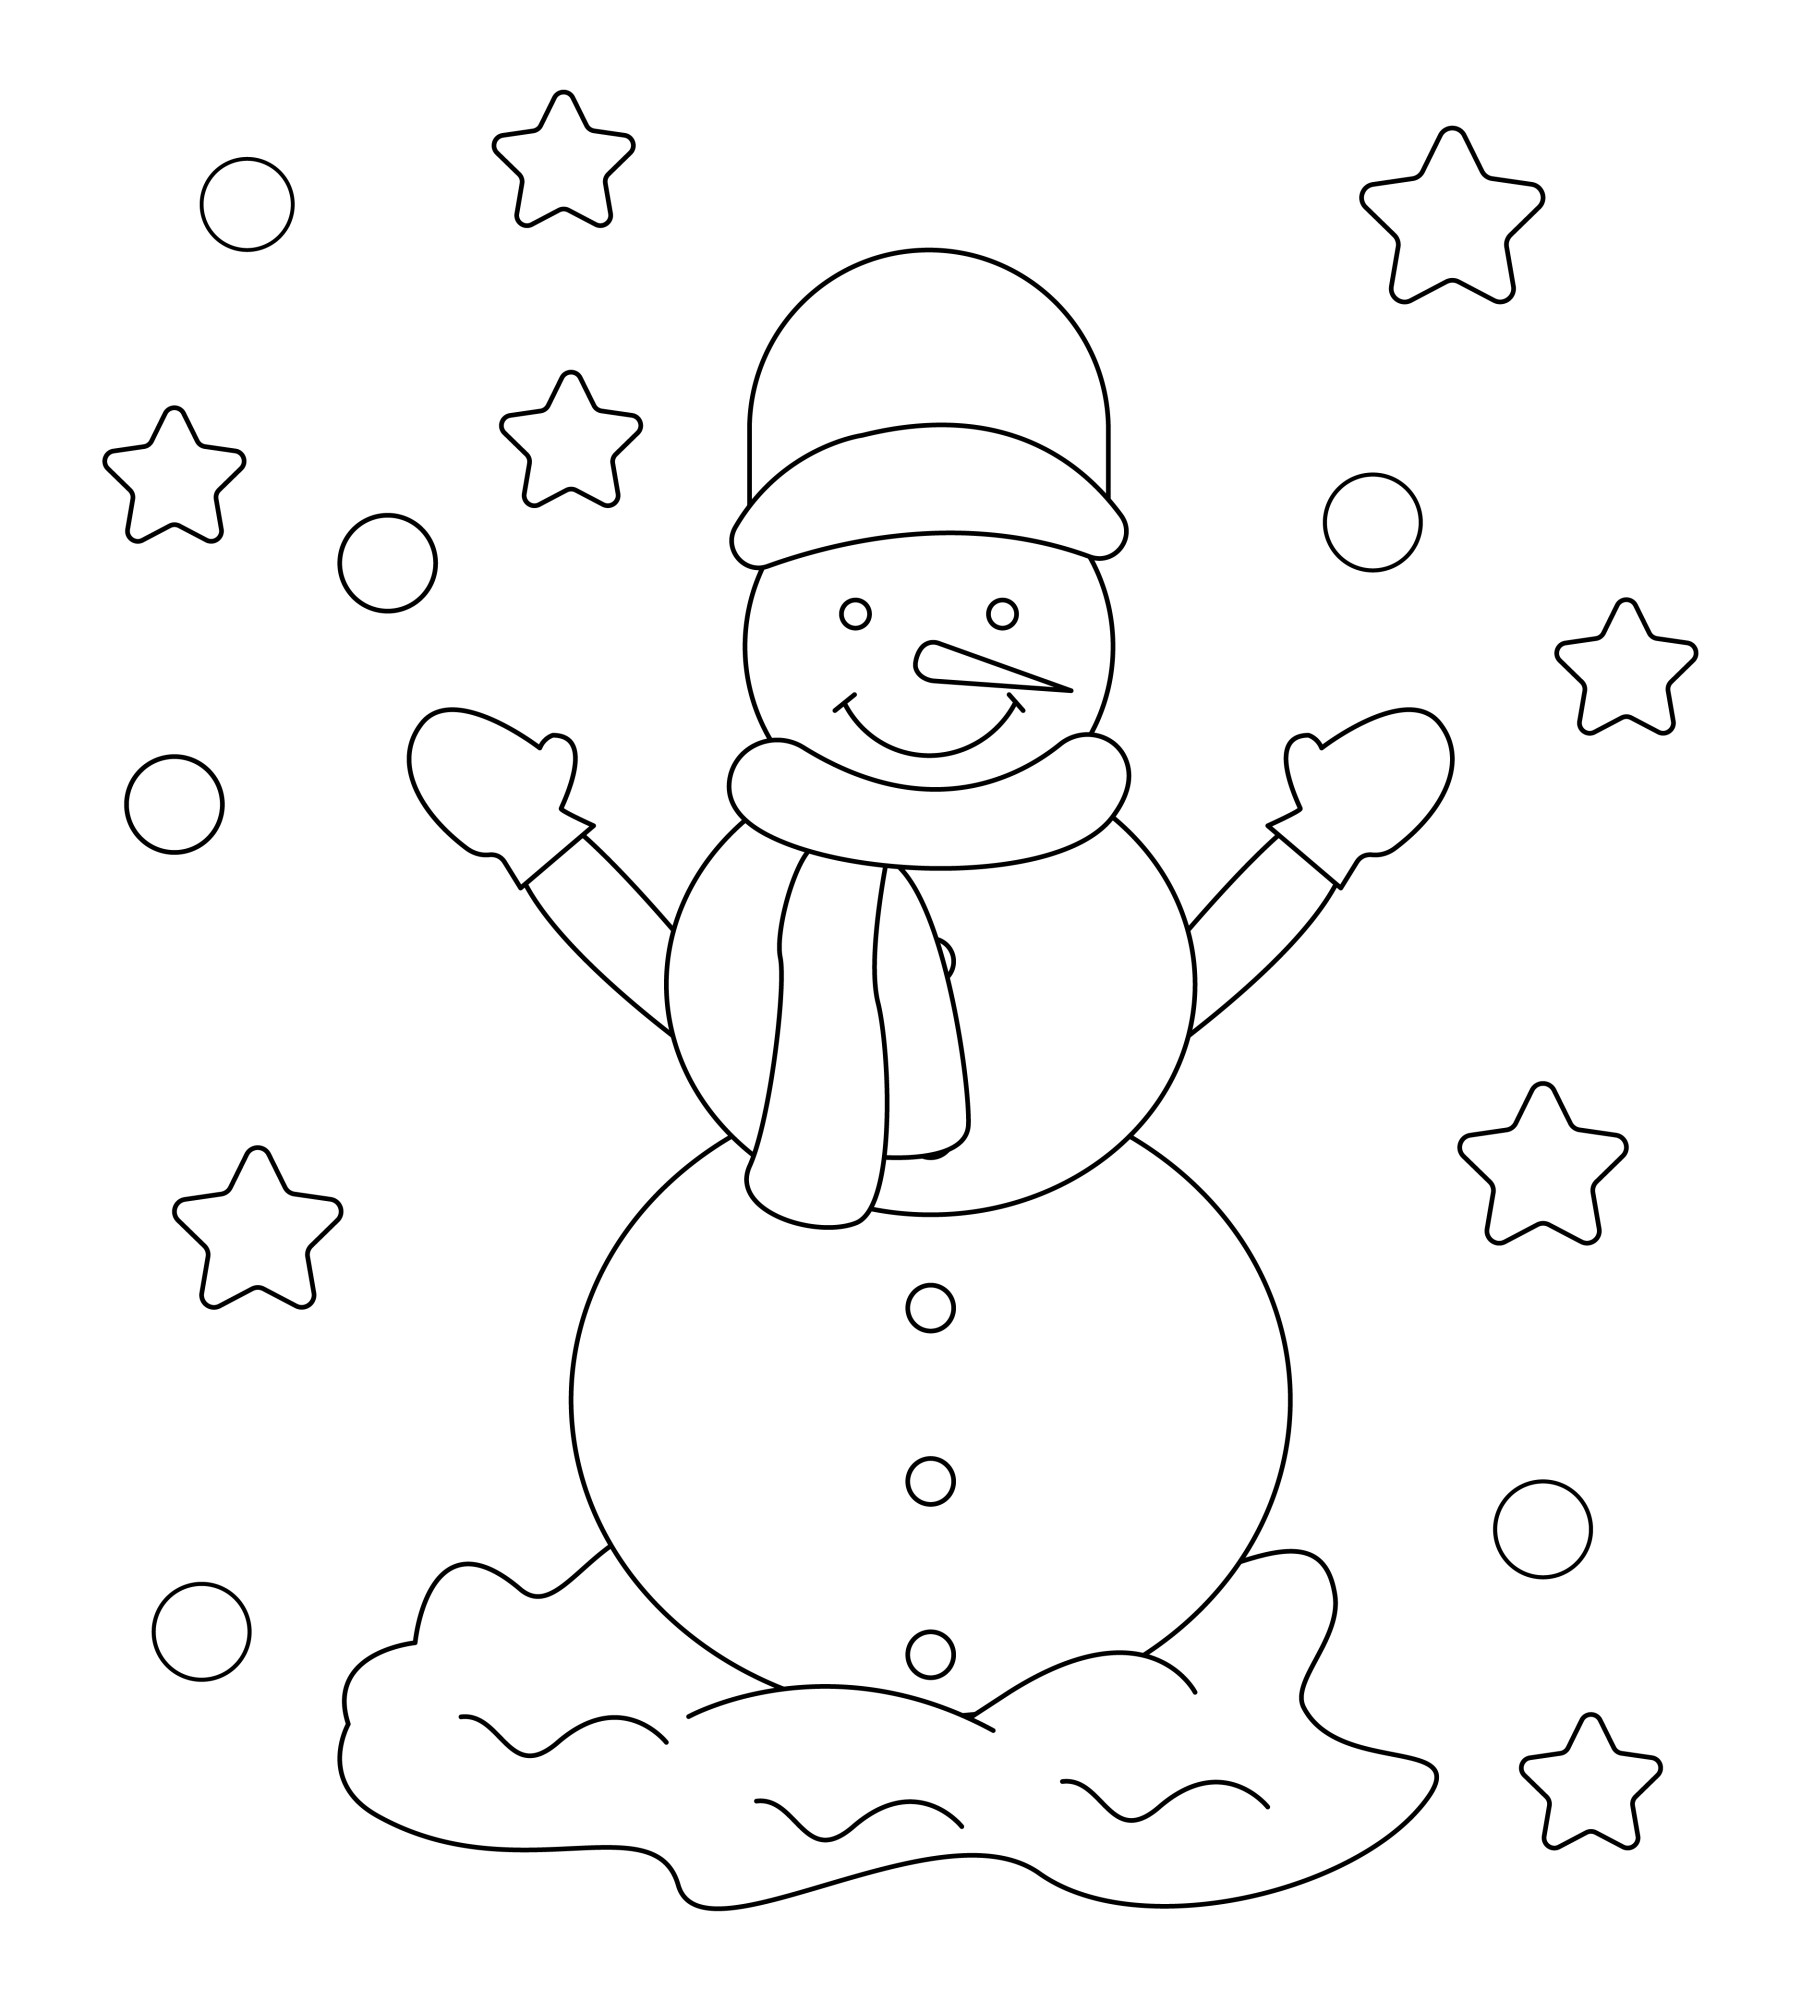 Раскраска для детей: снеговик в шапке и шарфе с поднятыми руками в варежках